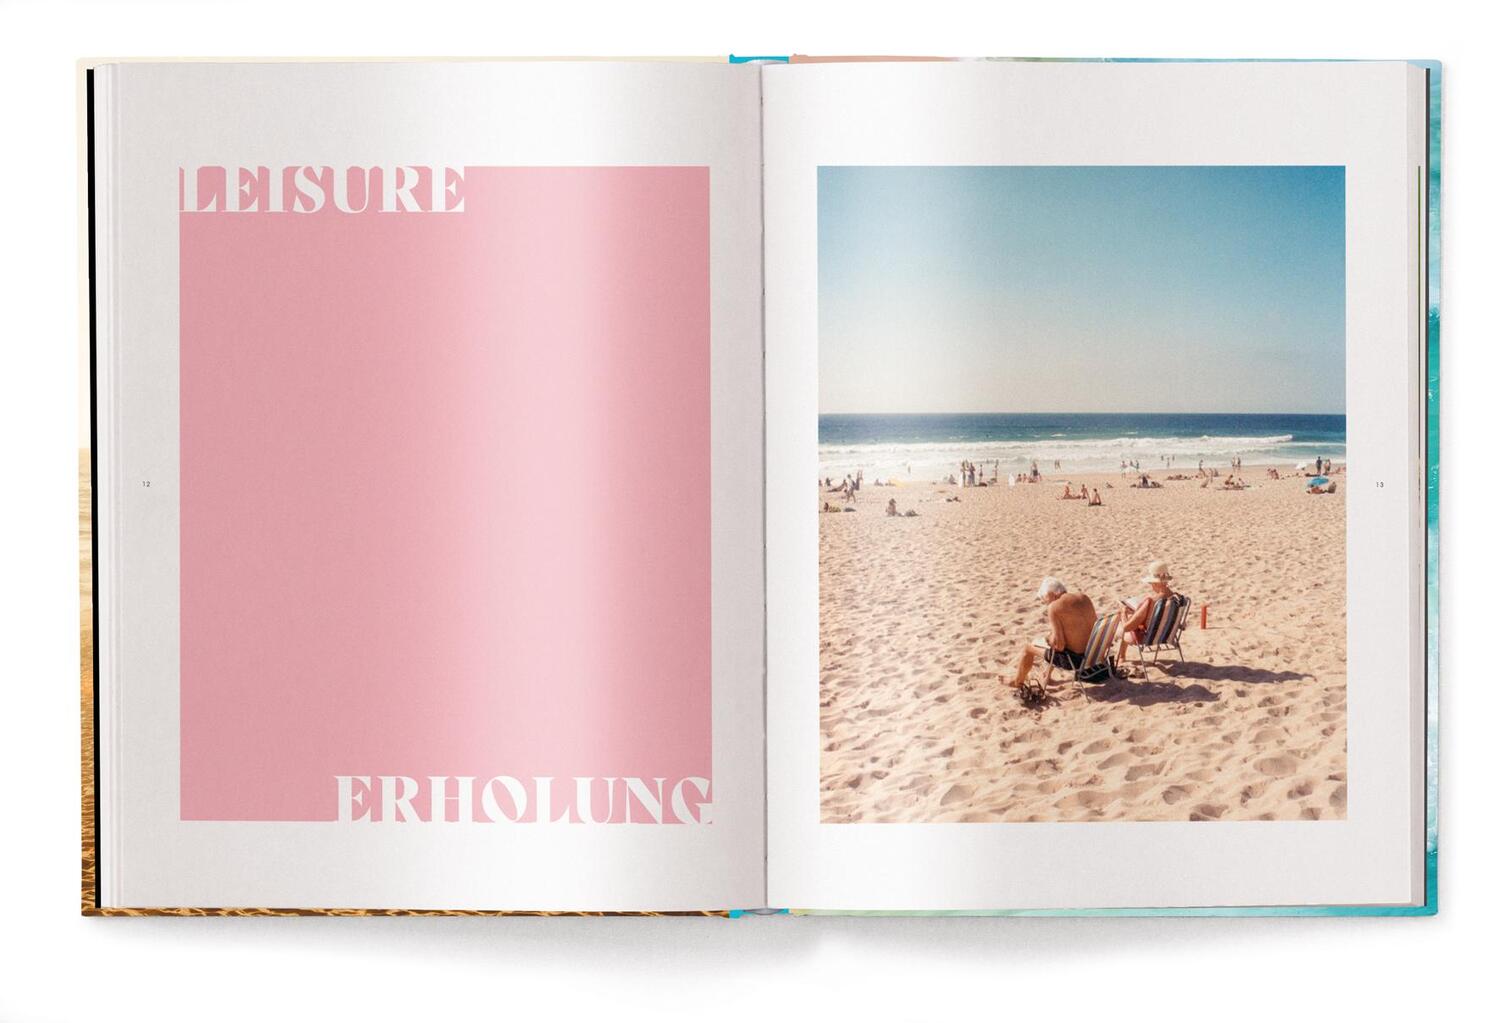 Bild: 9783961714469 | Beachlife | Stefan Maiwald | Buch | Deutsch | 2023 | teNeues Verlag